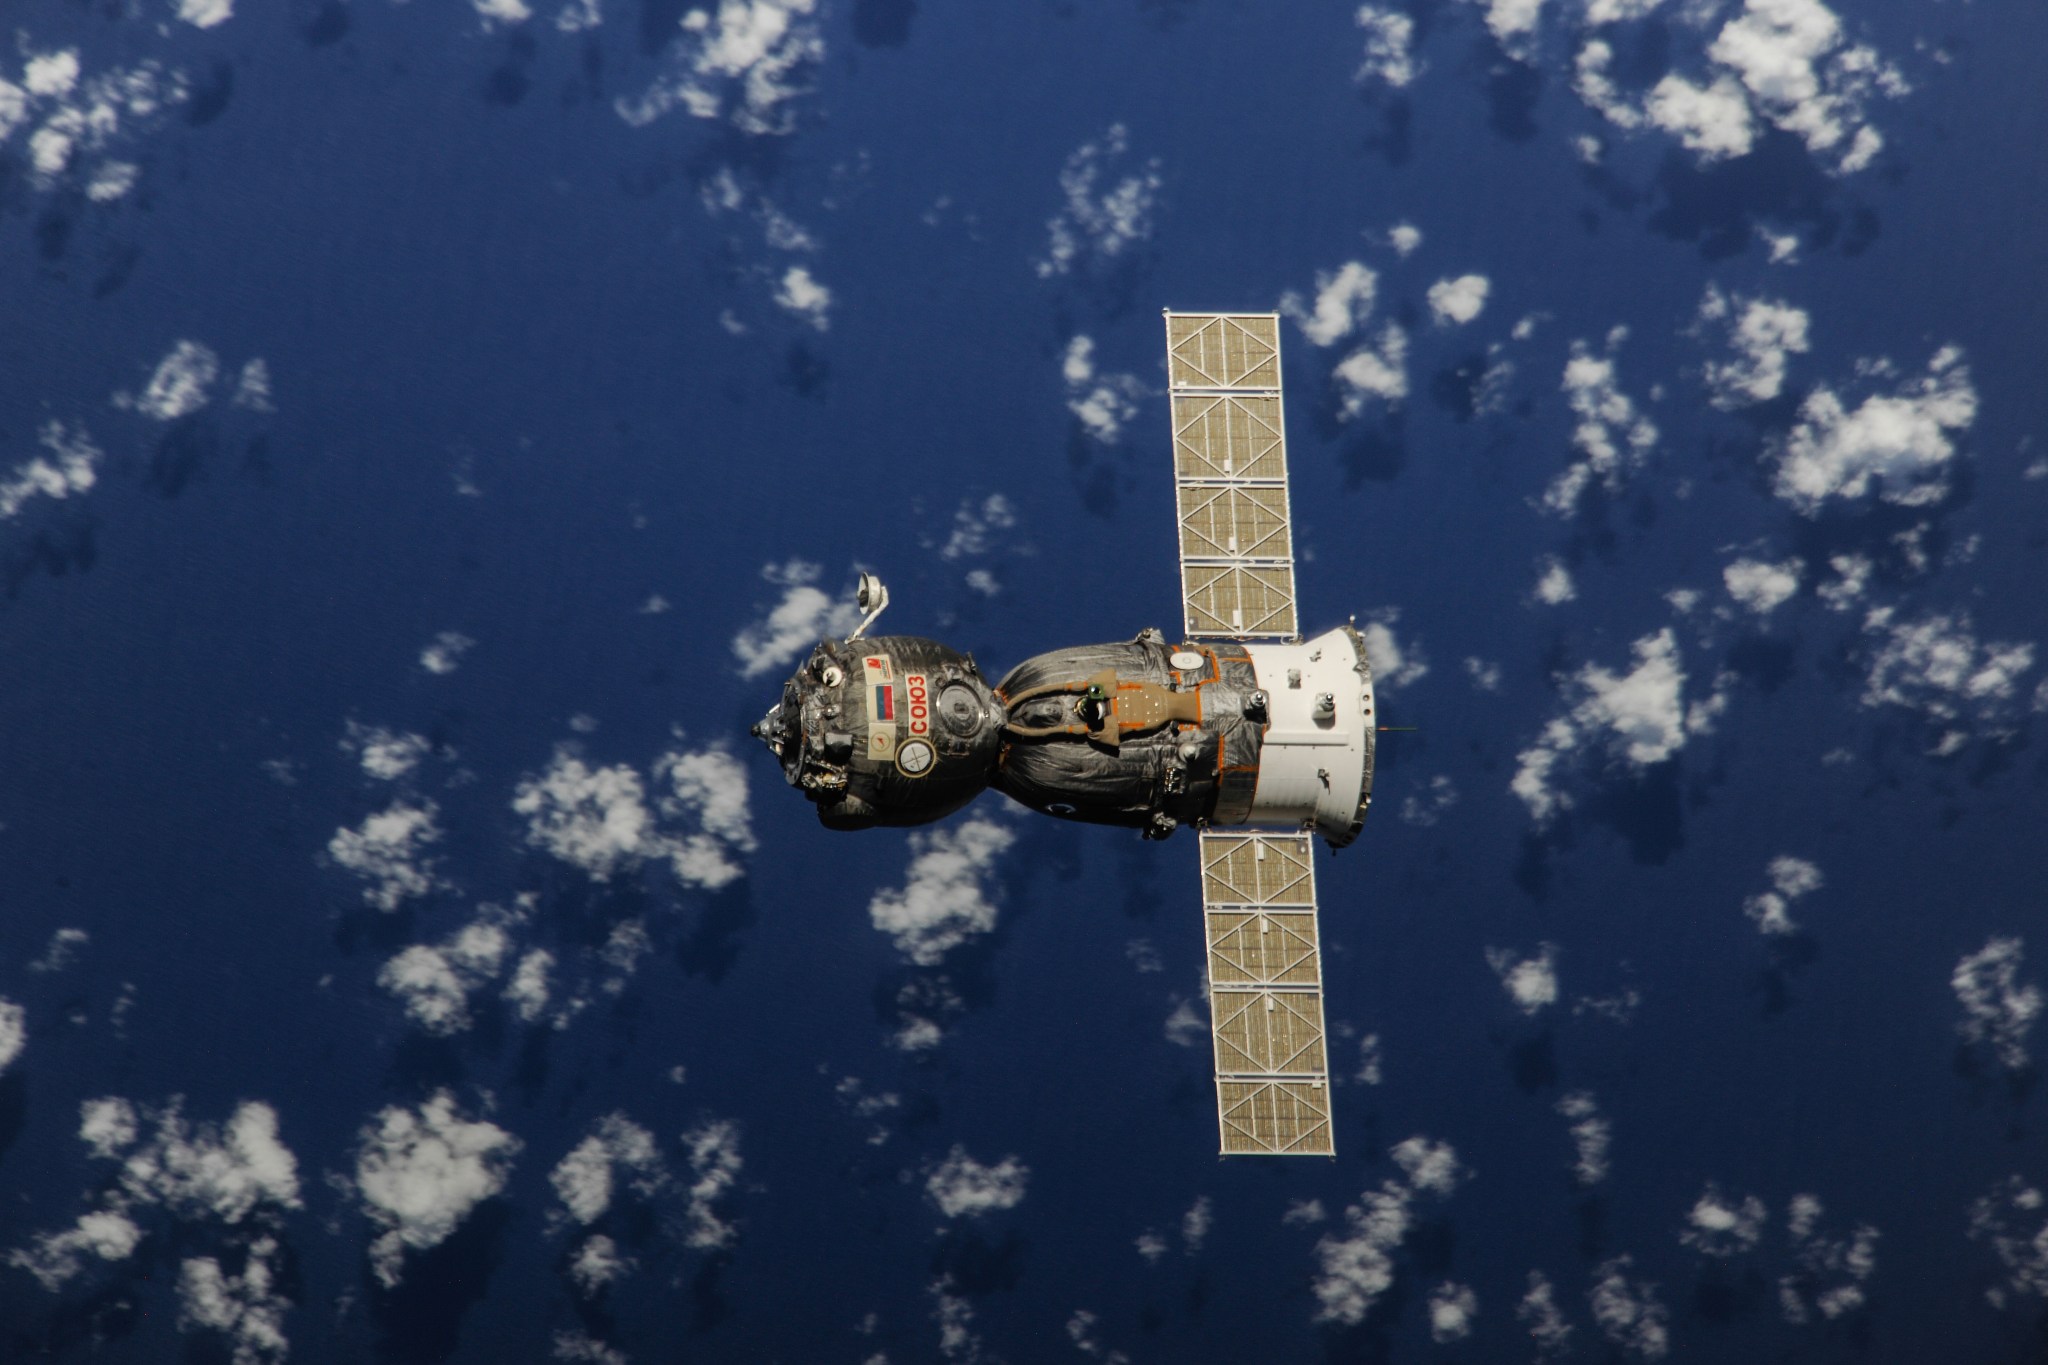 Soyuz spacecraft departs